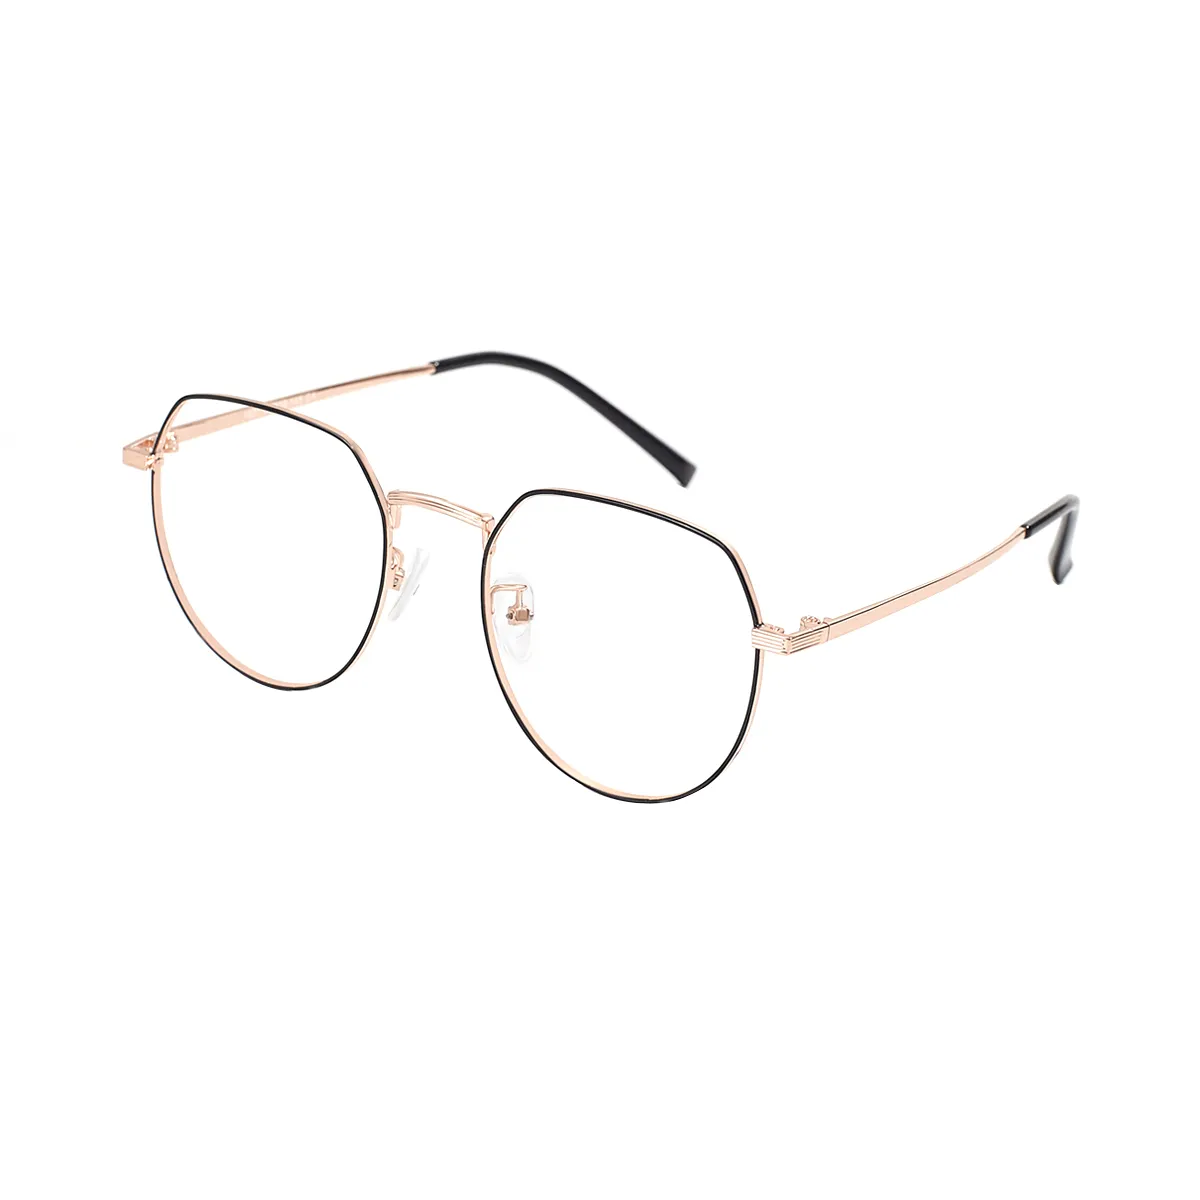 Izabel - Oval Black-Gold Glasses for Women - EFE